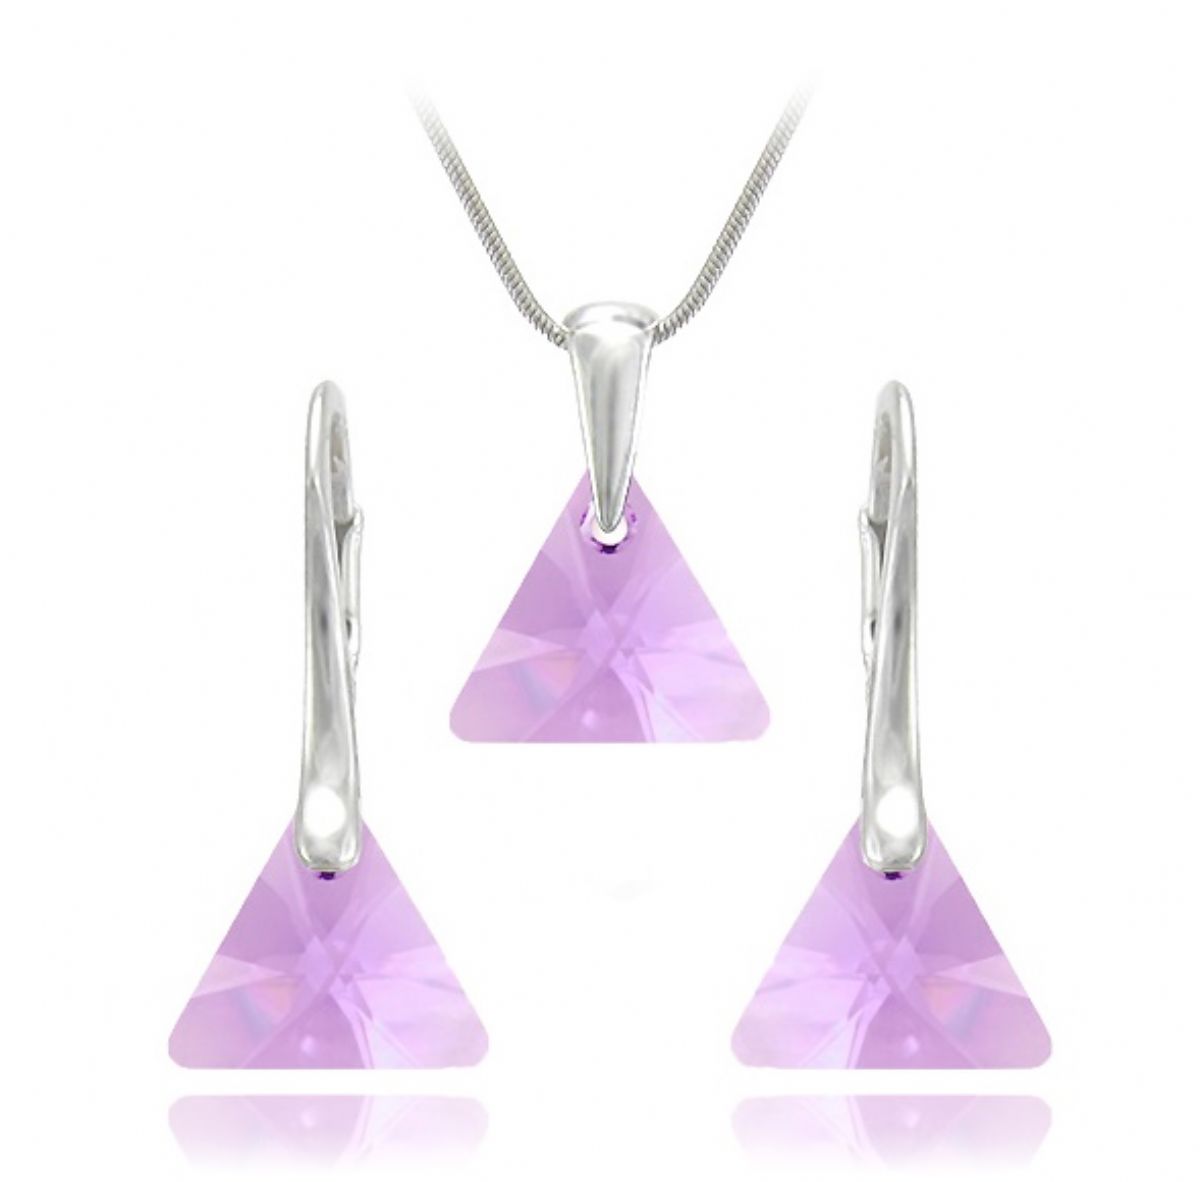 Stříbrný set SWAROVSKI - Xilion Triangle Violet 1/3